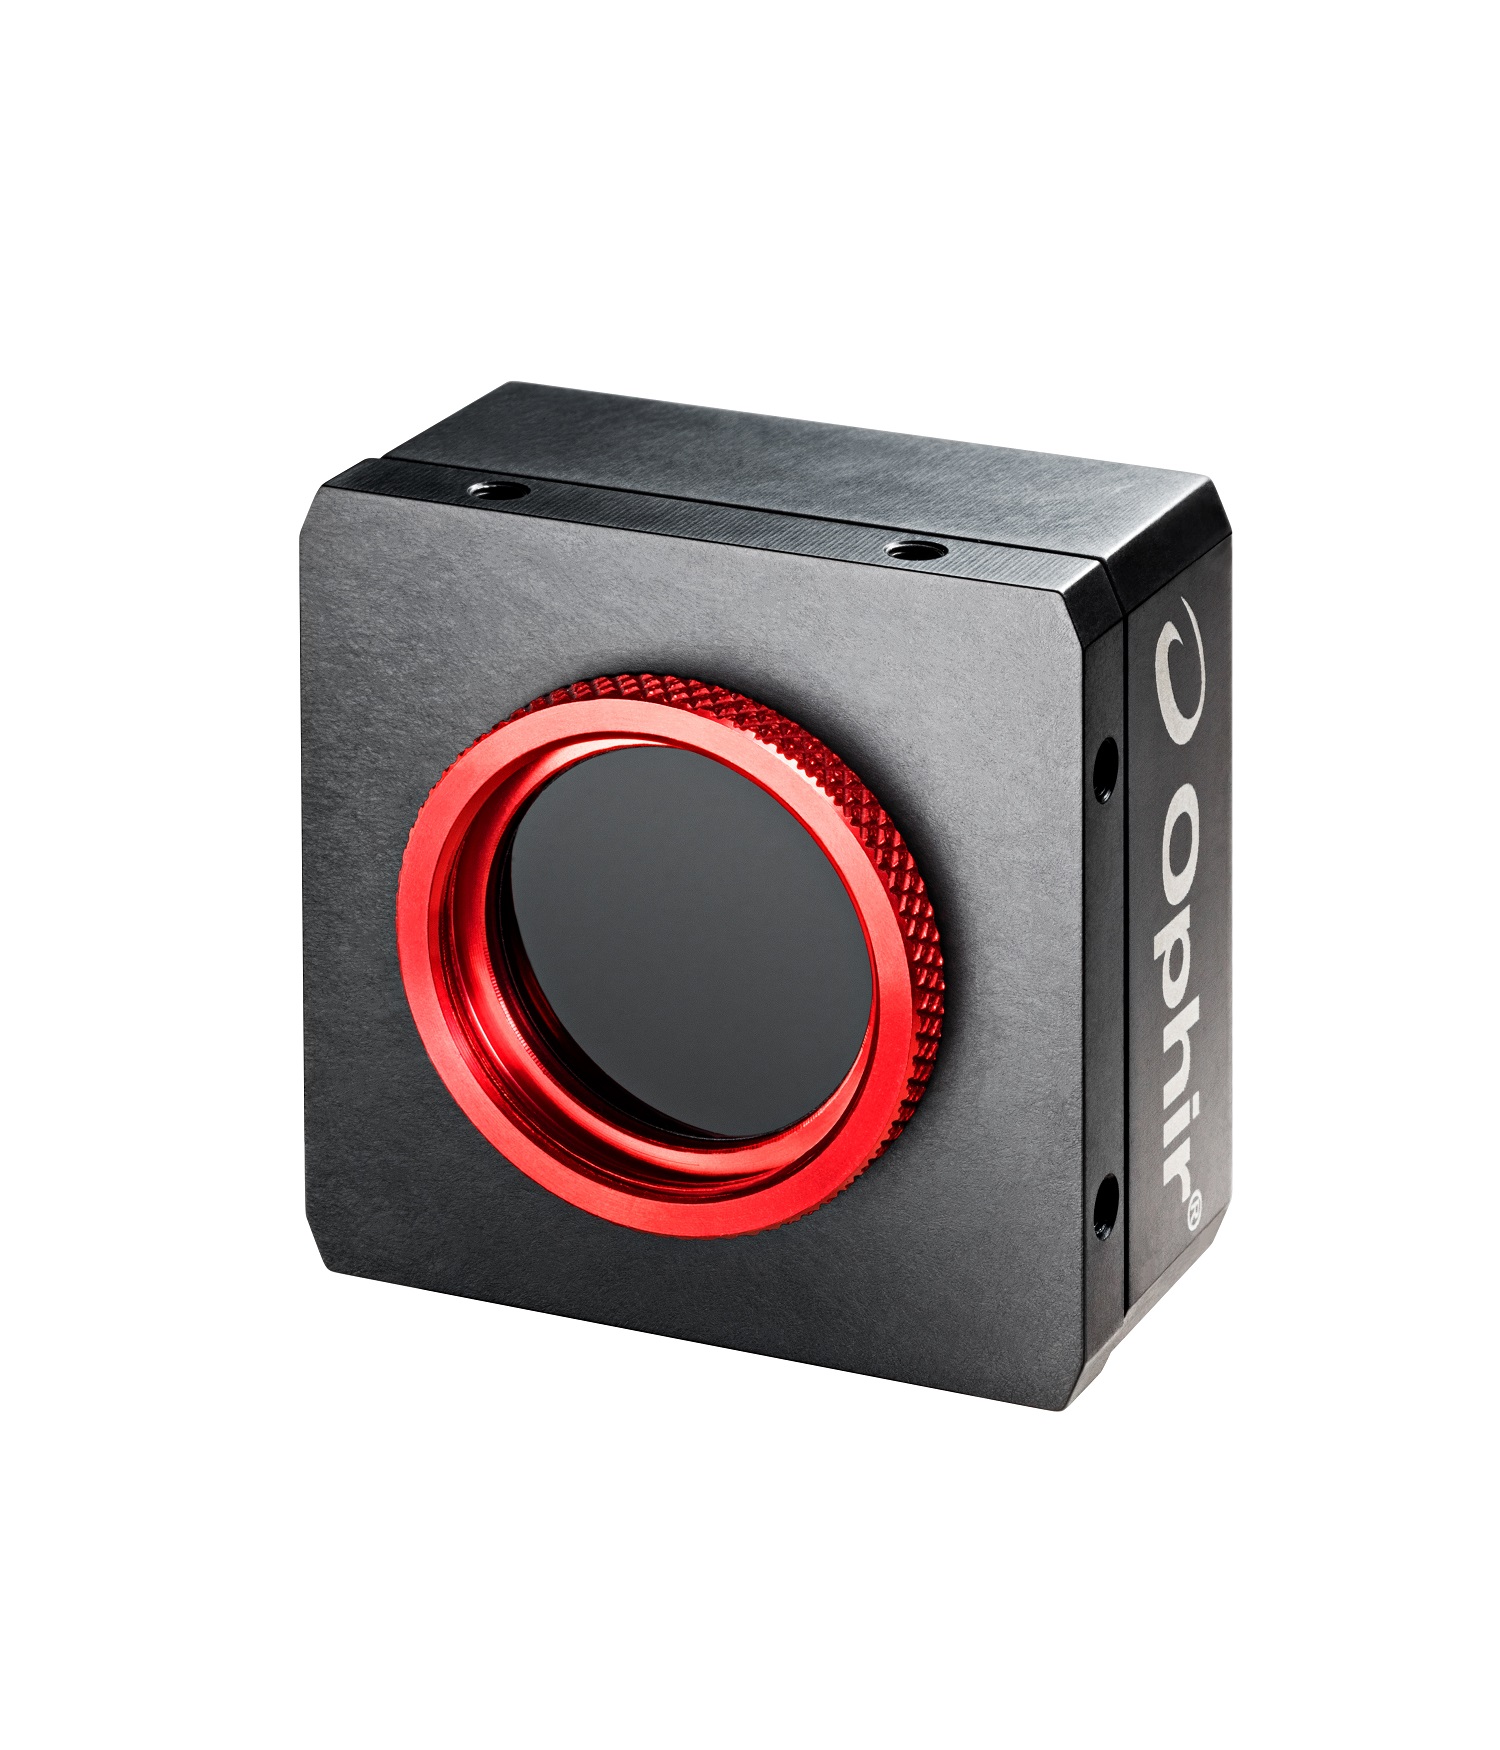 Nouvel analyseur de profil Ophir® basé sur une caméra CMOS 